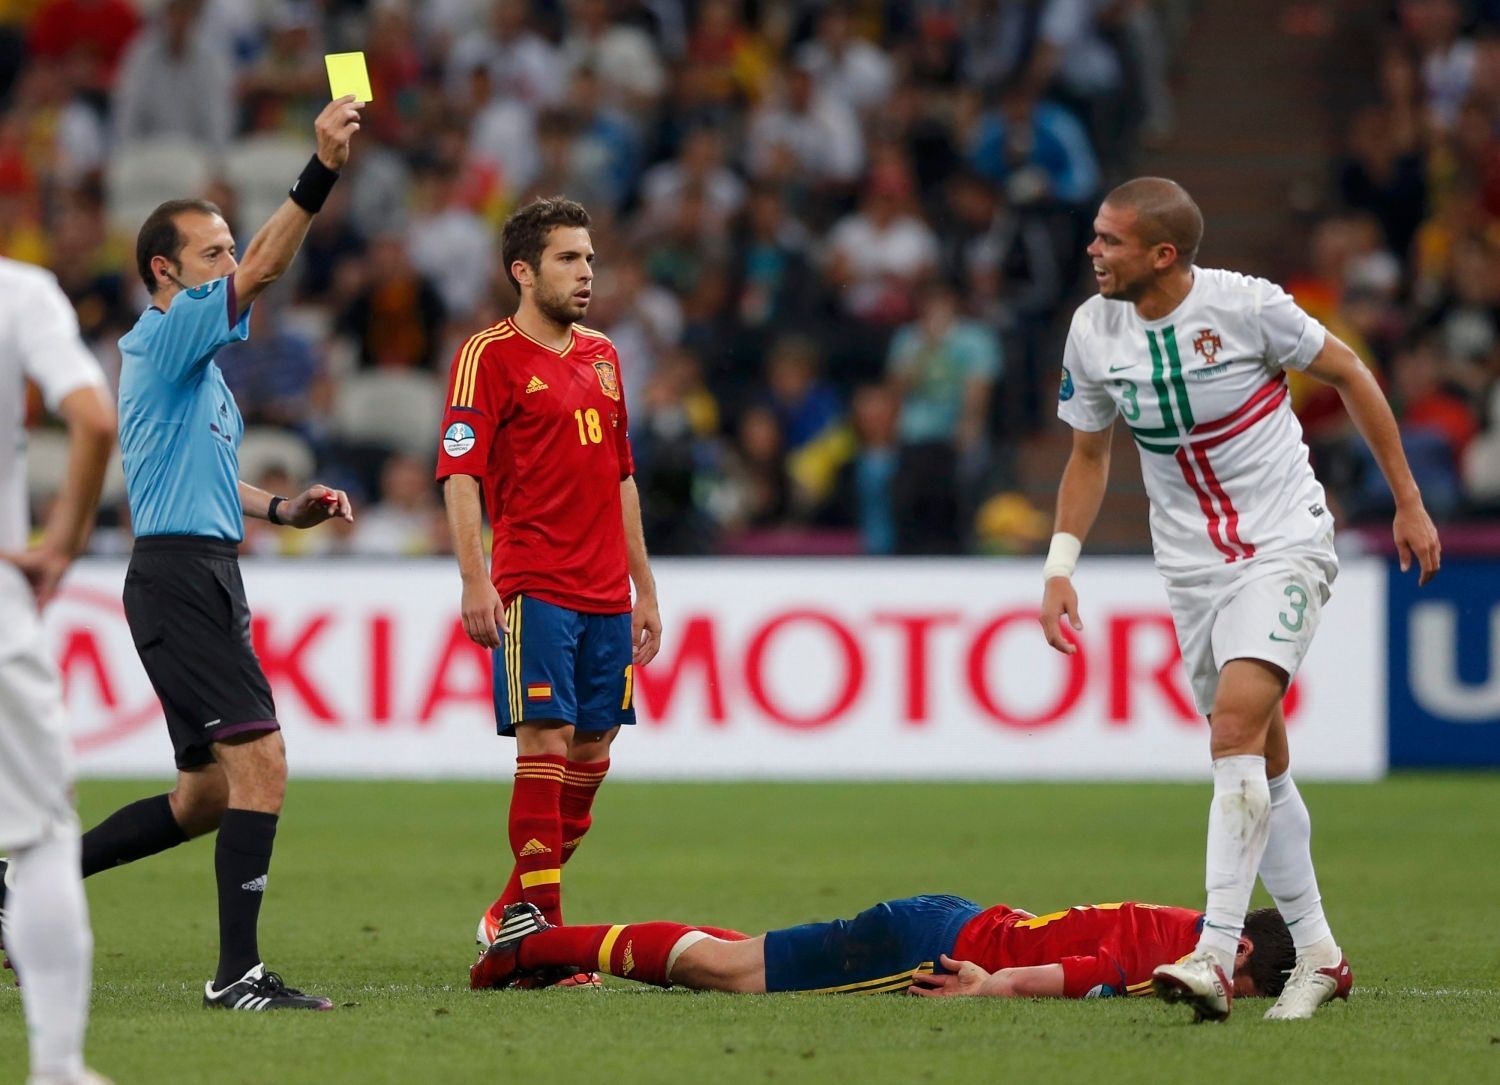 Turecký rozhodčí Cuneyt Cakir dává žlutou kartu Portugalci Pepemu během semifinálového utkání mezi Portugalskem a Španělskem na Euru 2012.